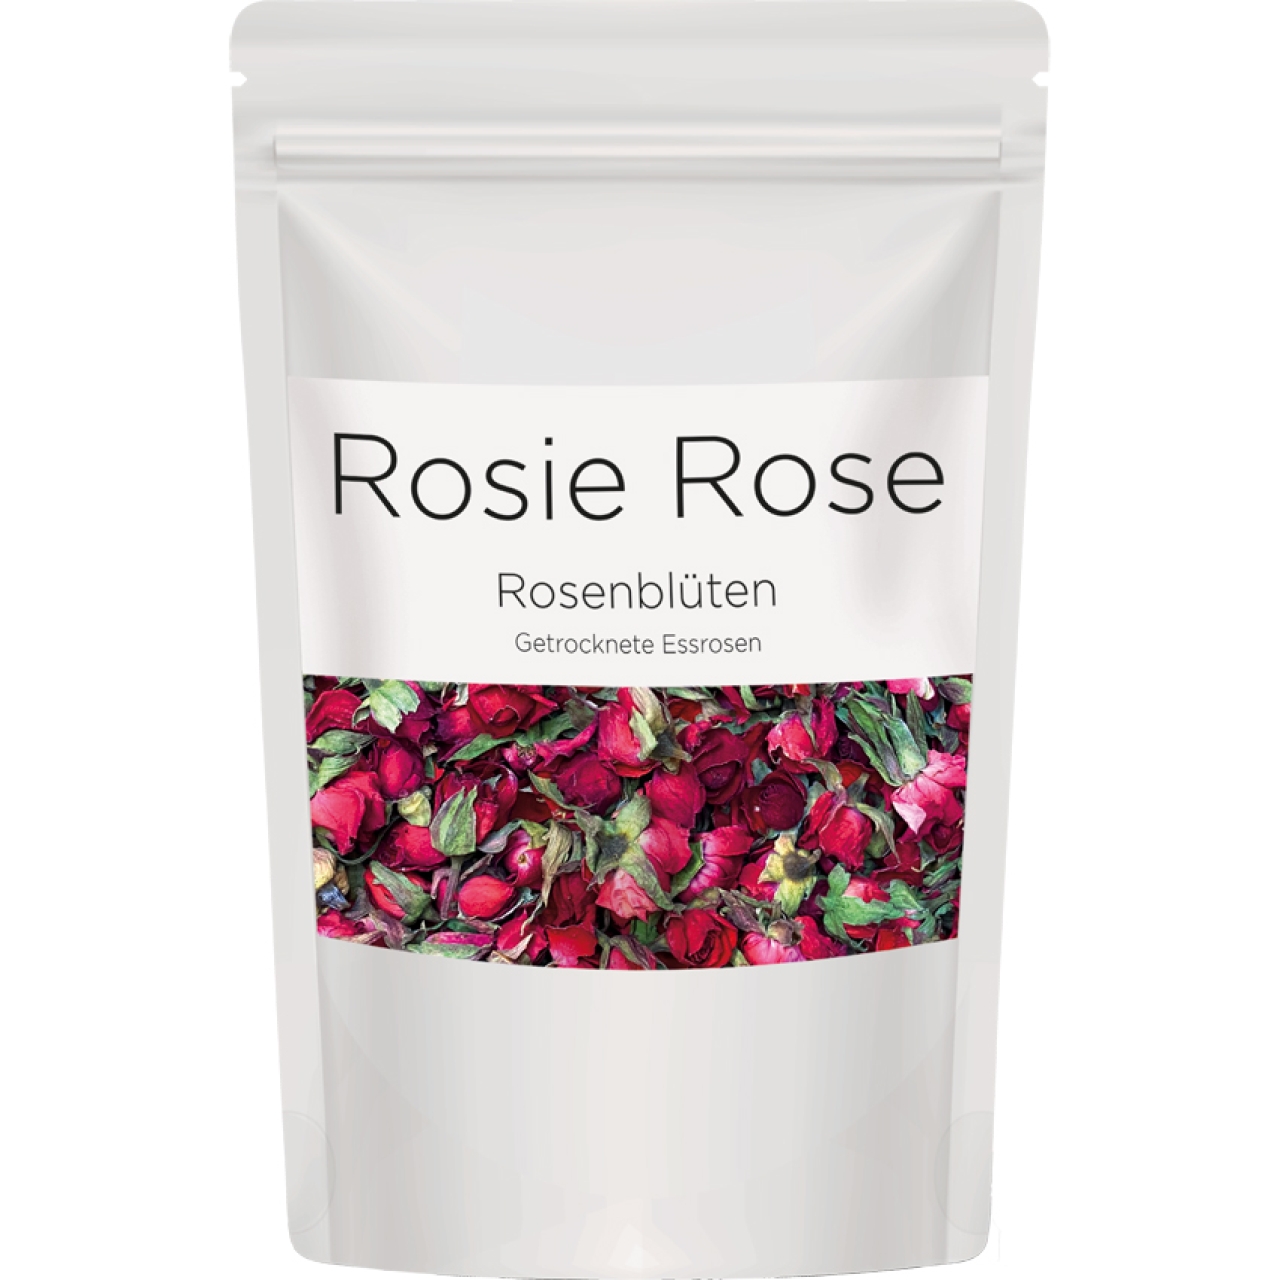 Rosenblüten "Red Cherry Gastro", 40 g, Kirschrot, Rosie Rose